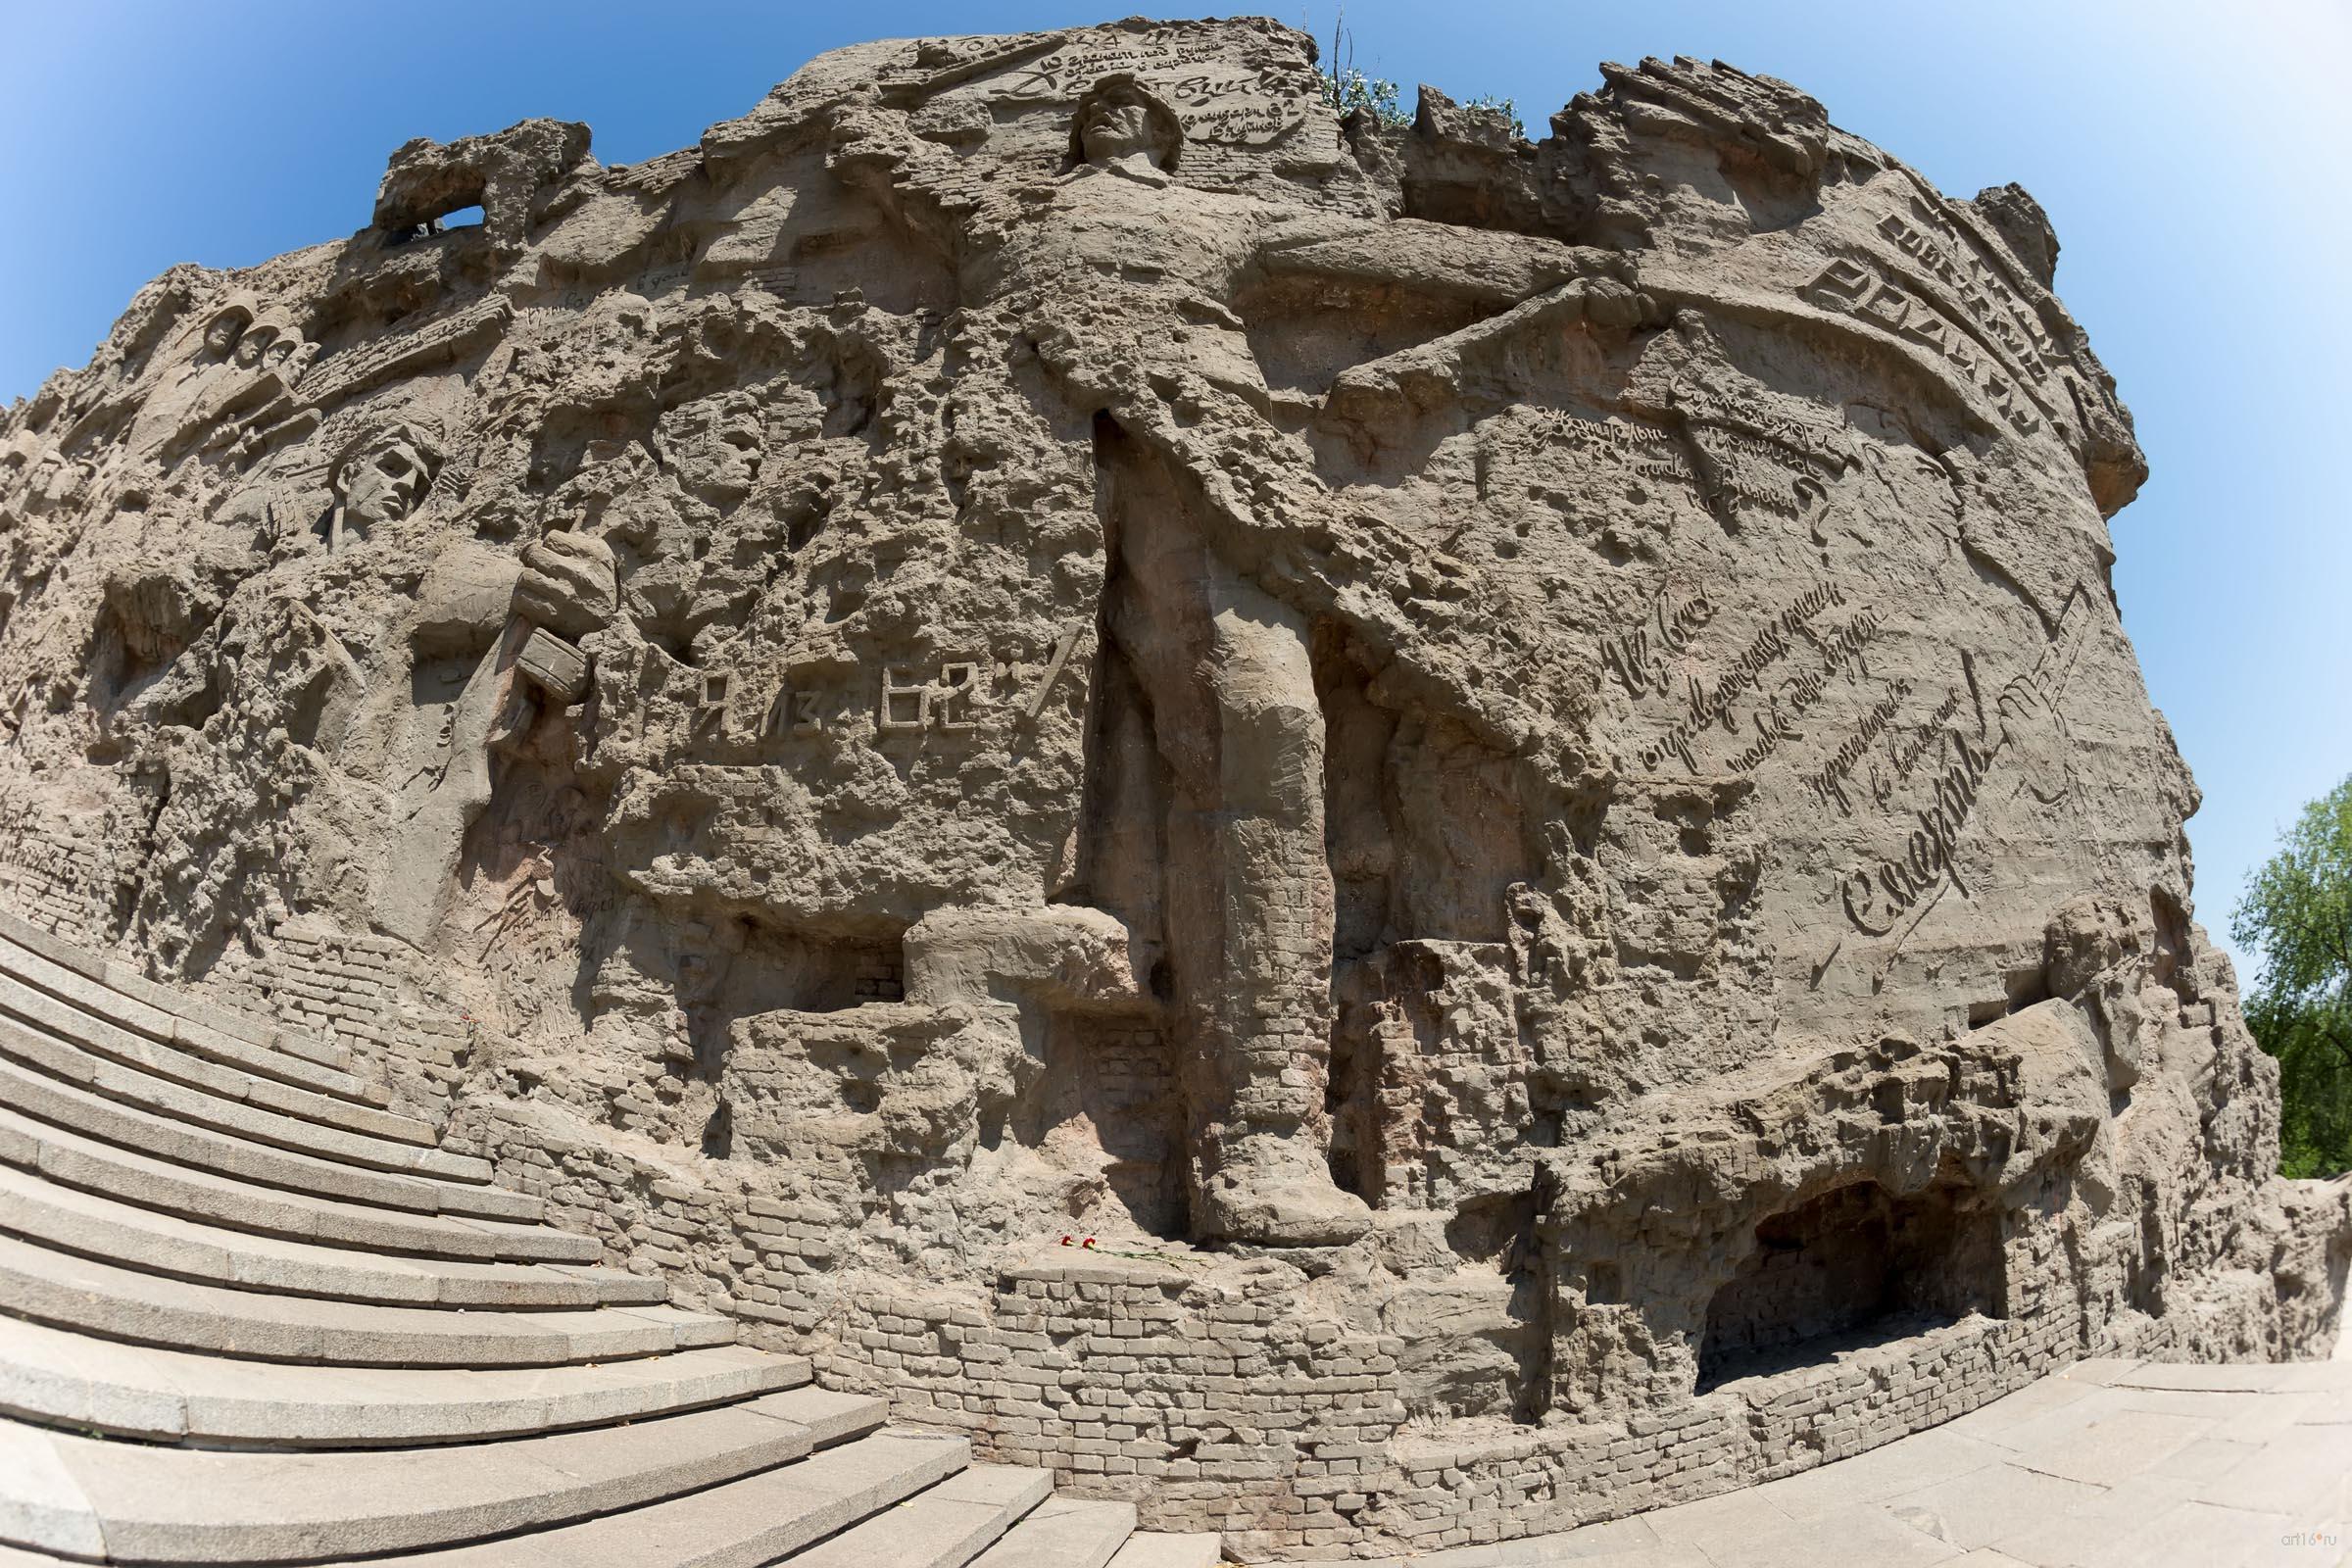  Стены-руины на Мамаевом кургане в форме горельефа::Волгогорад. 2015